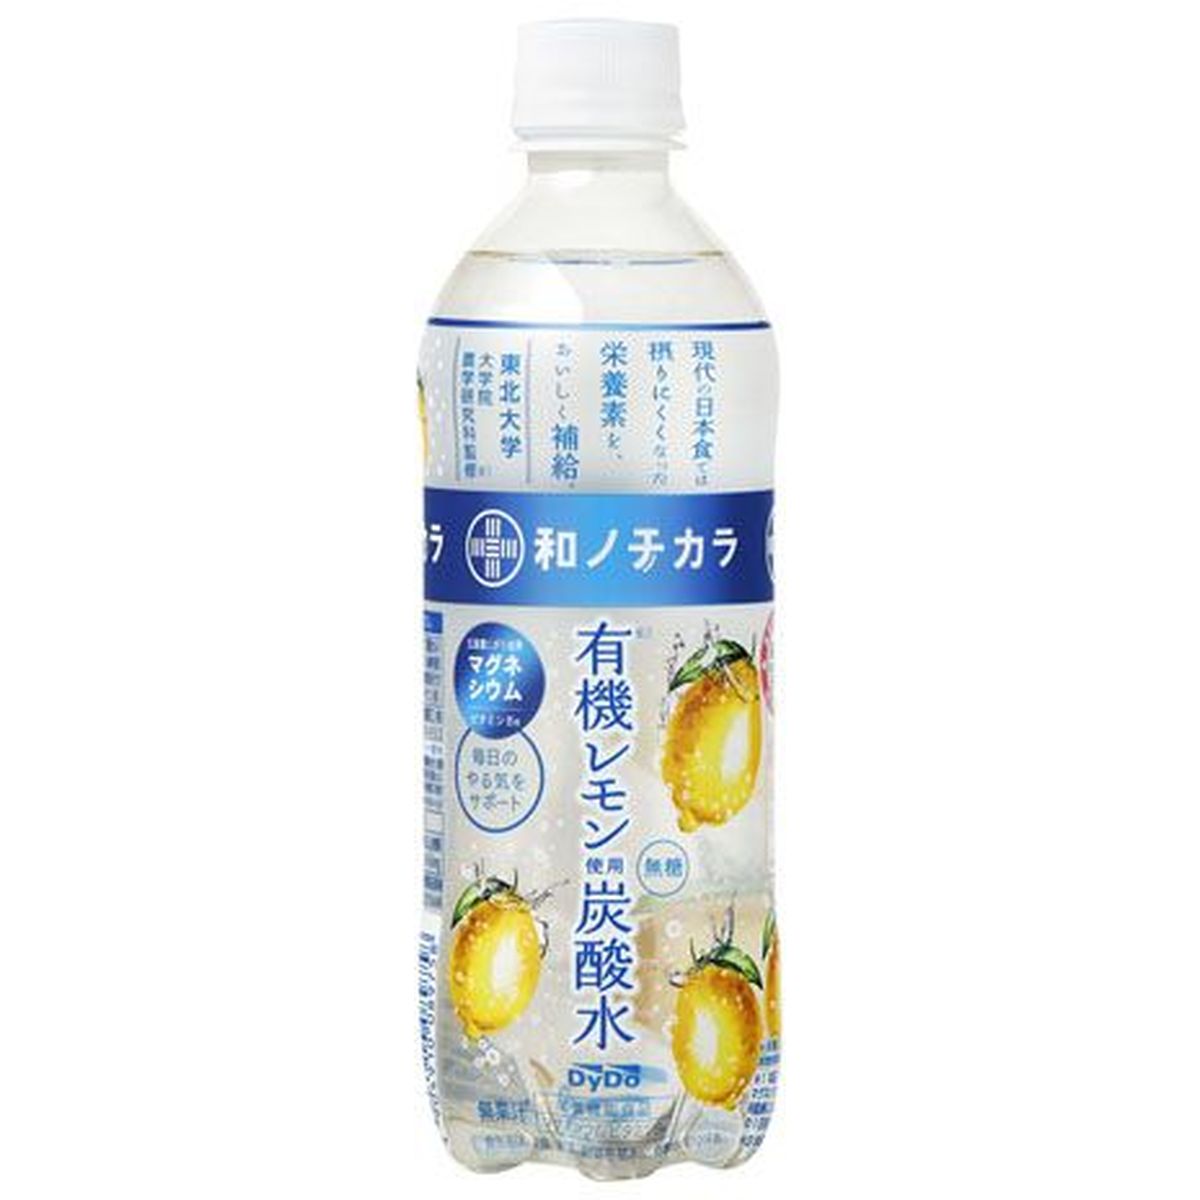 【24個入リ】ダイドー 和ノチカラ有機レモン炭酸水 ペット 500ml